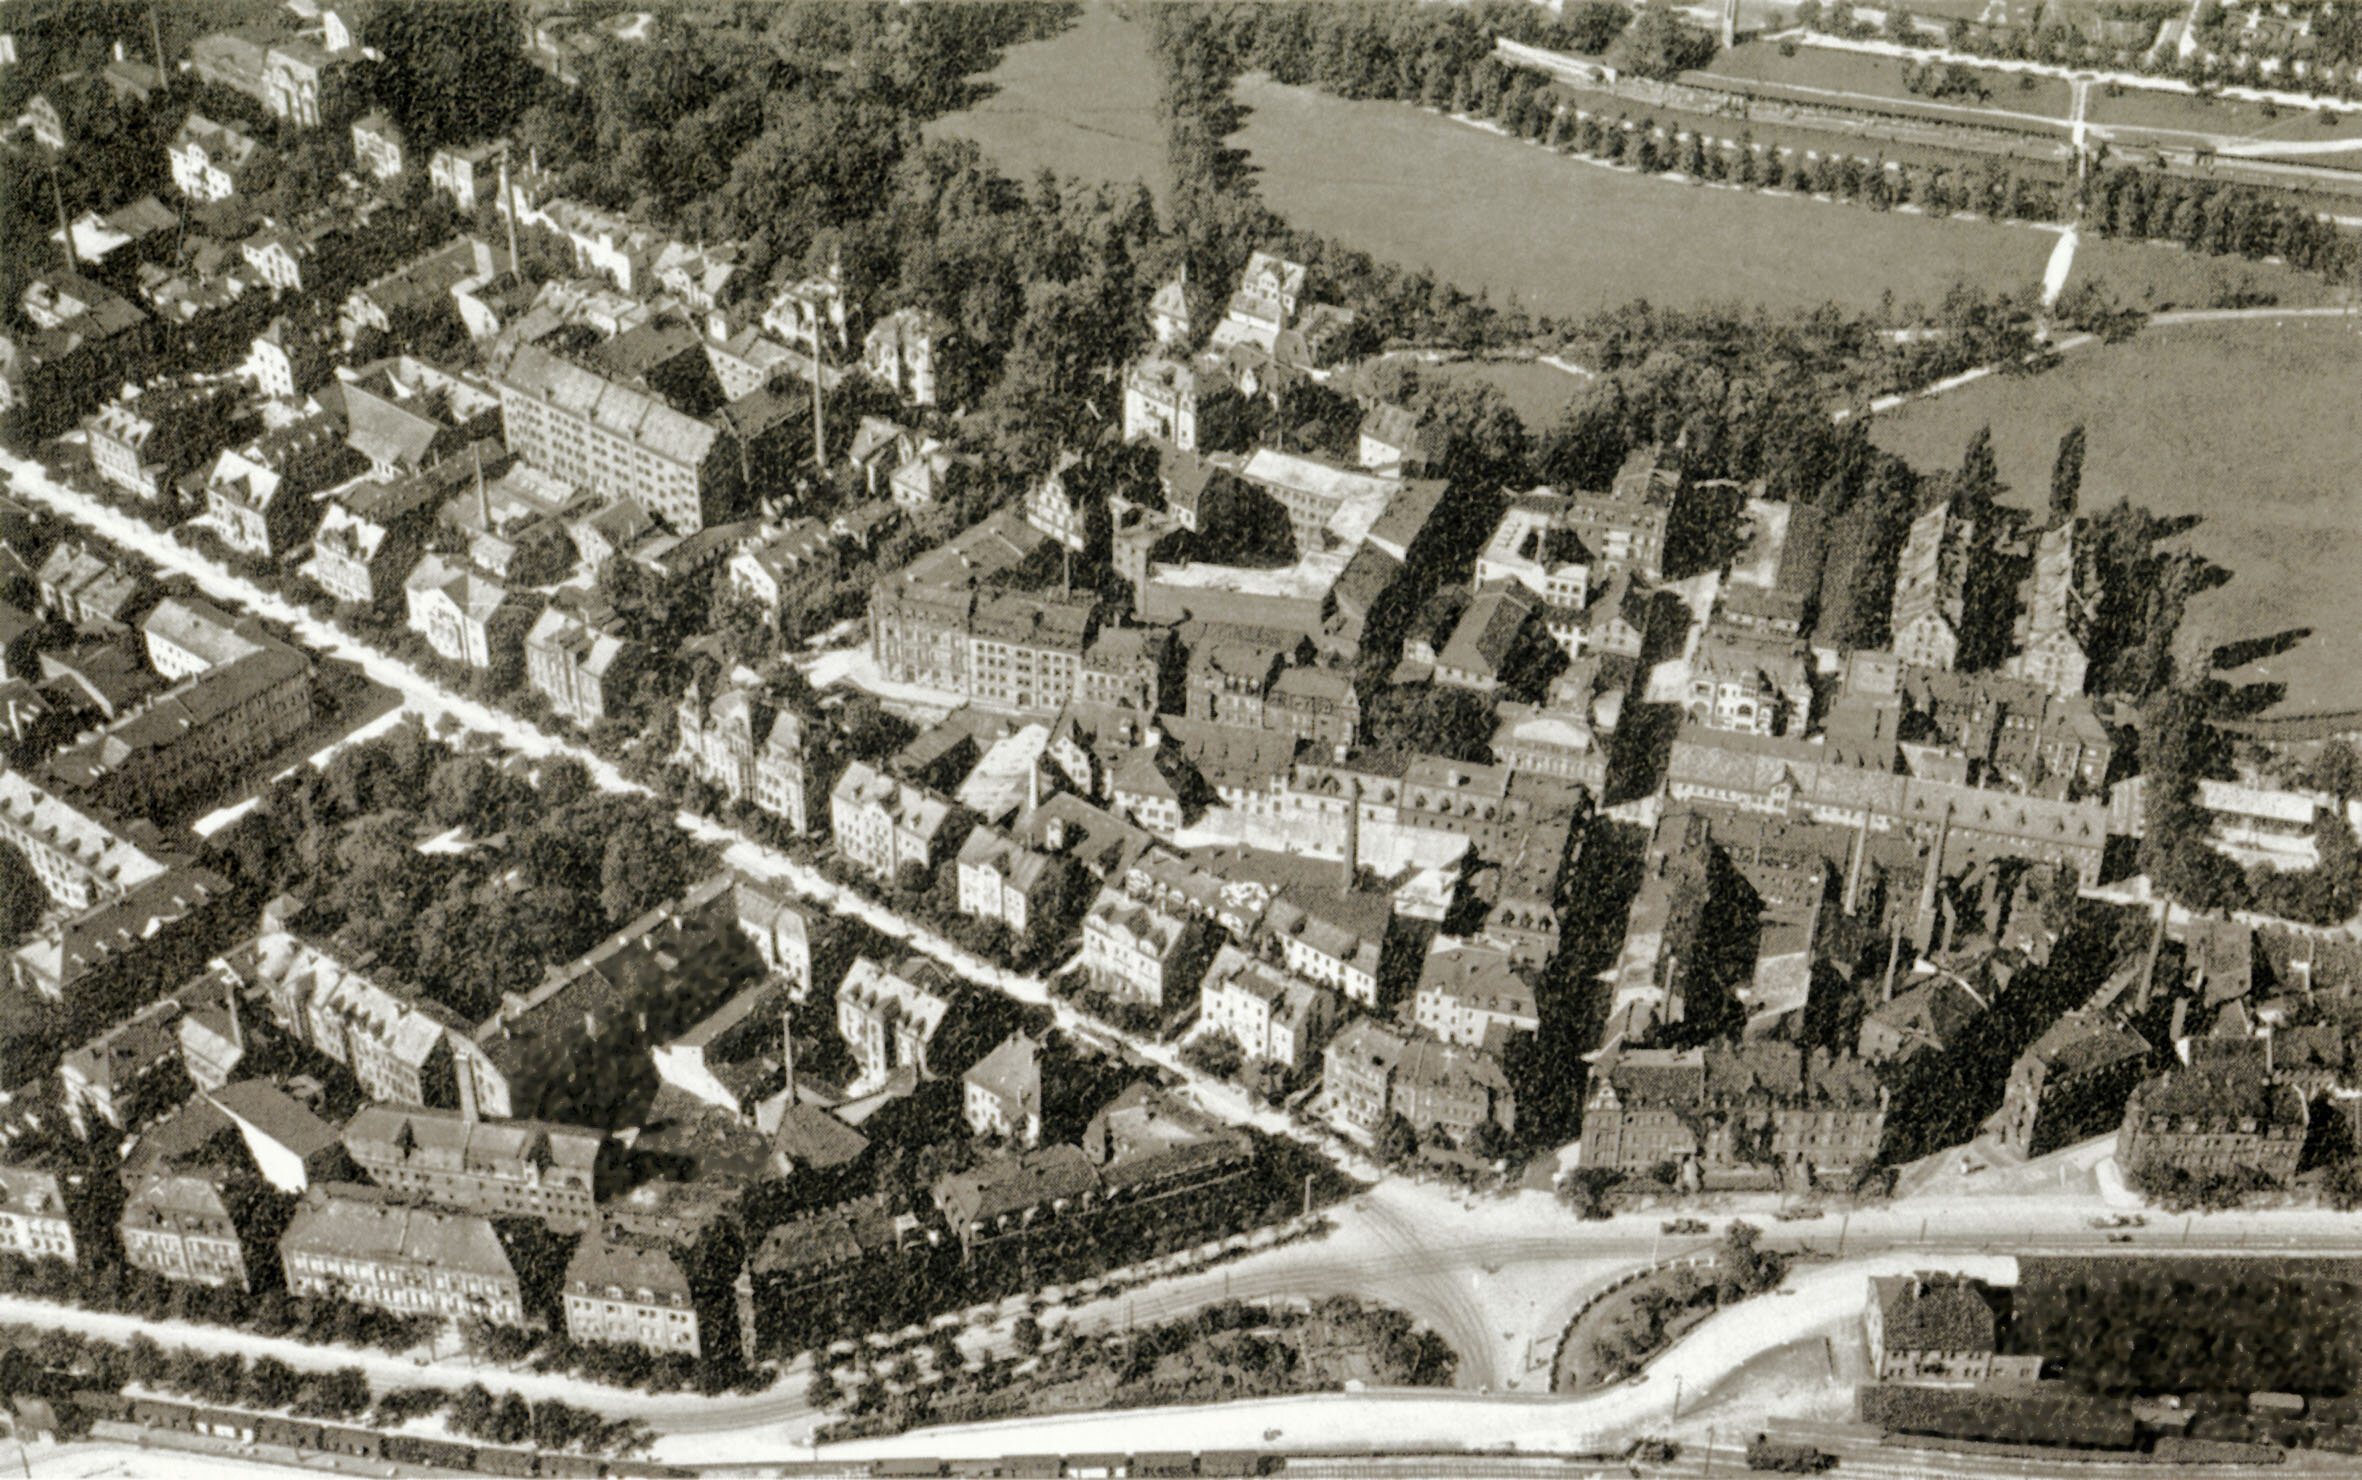 Luftbild der Marienvorstadt, die als erste planmäßige Stadterweiterung Nürnbergs ab den 1860er Jahren entstand. Luftaufnahme der Marienstraße aus südöstlicher Richtung 1927.